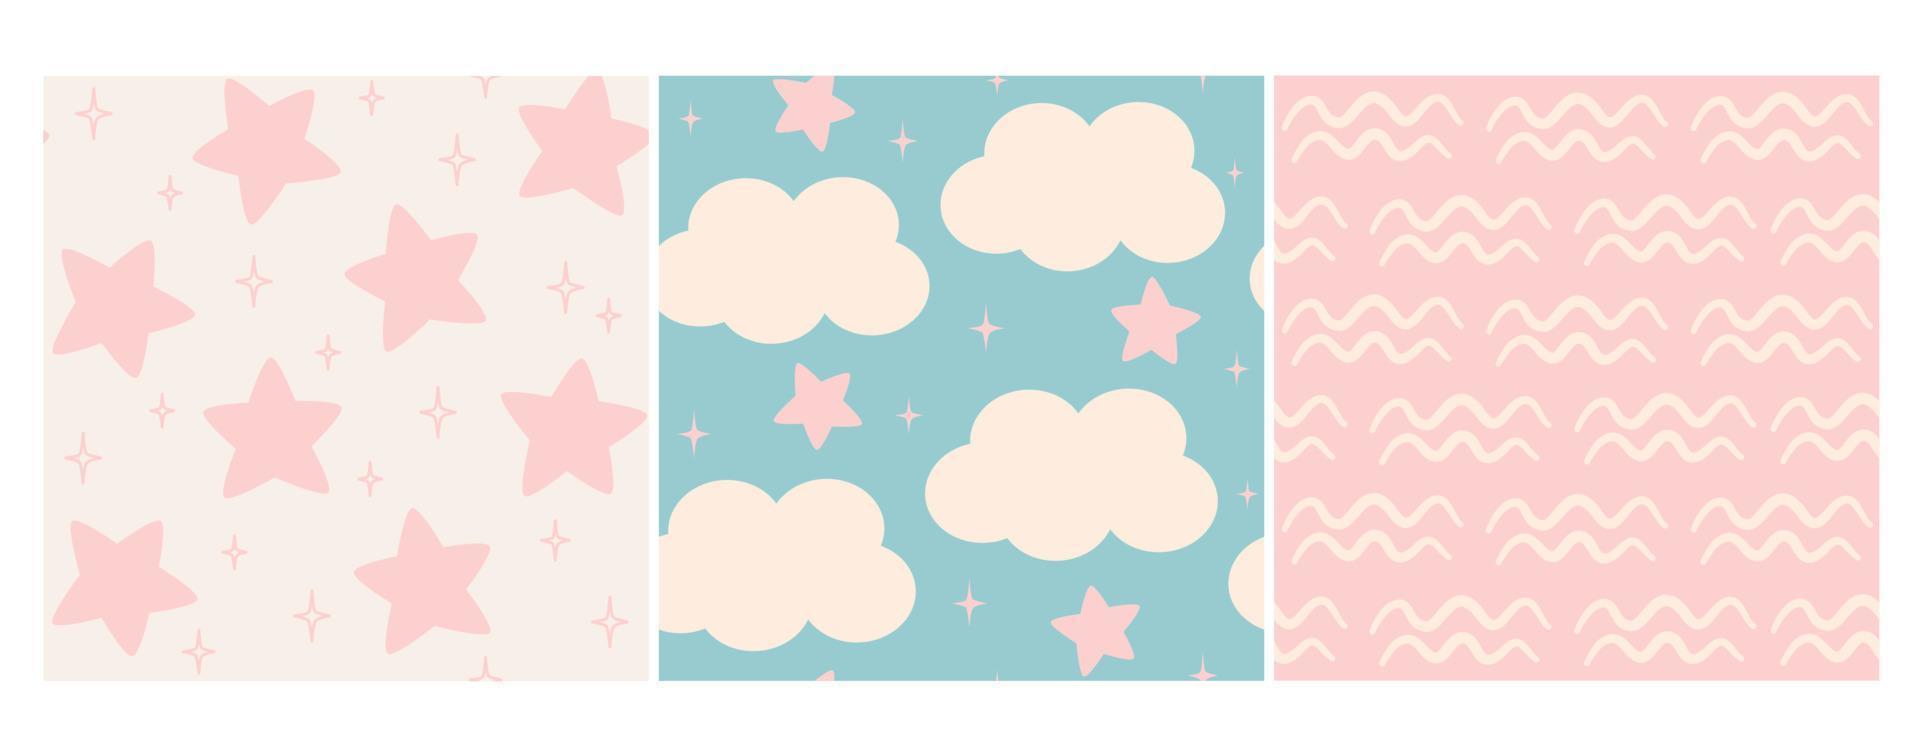 linda encantador pastel rosado y azul mano dibujado conjunto de sin costura vector modelo antecedentes ilustración con estrellas y nubes para niños, bebé ducha y otros